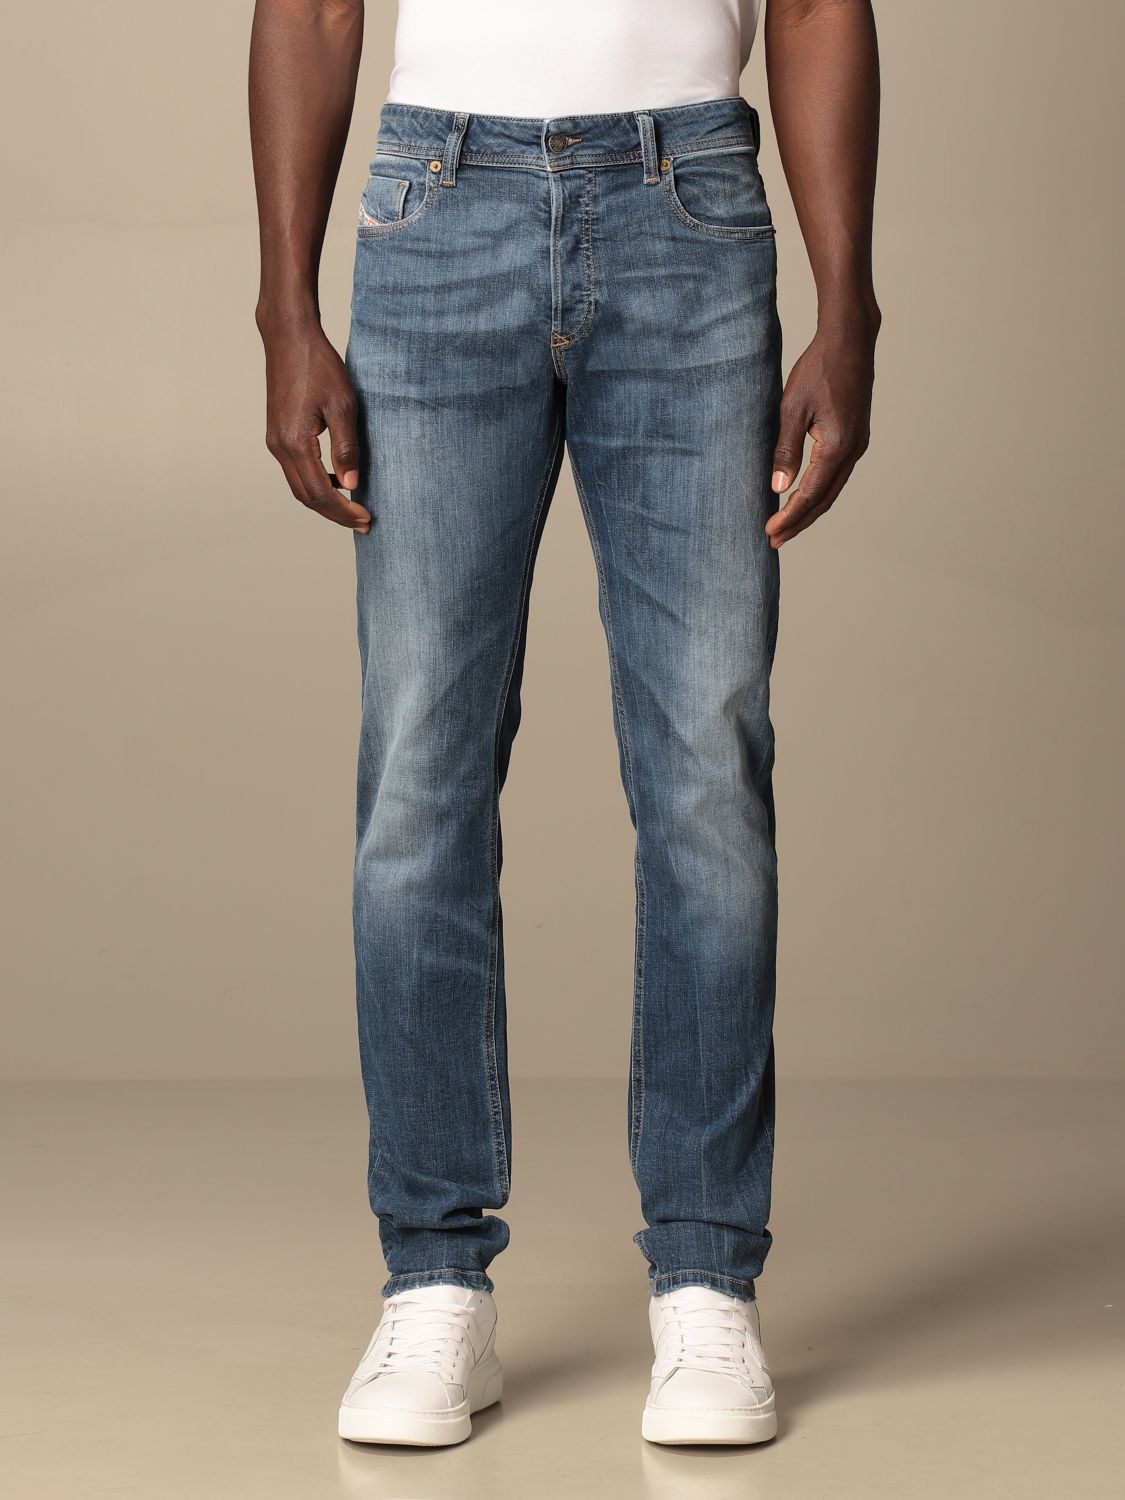 DIESEL: Sleenker-x 5-pocket skinny stretch jeans - Denim | Jeans Diesel ...